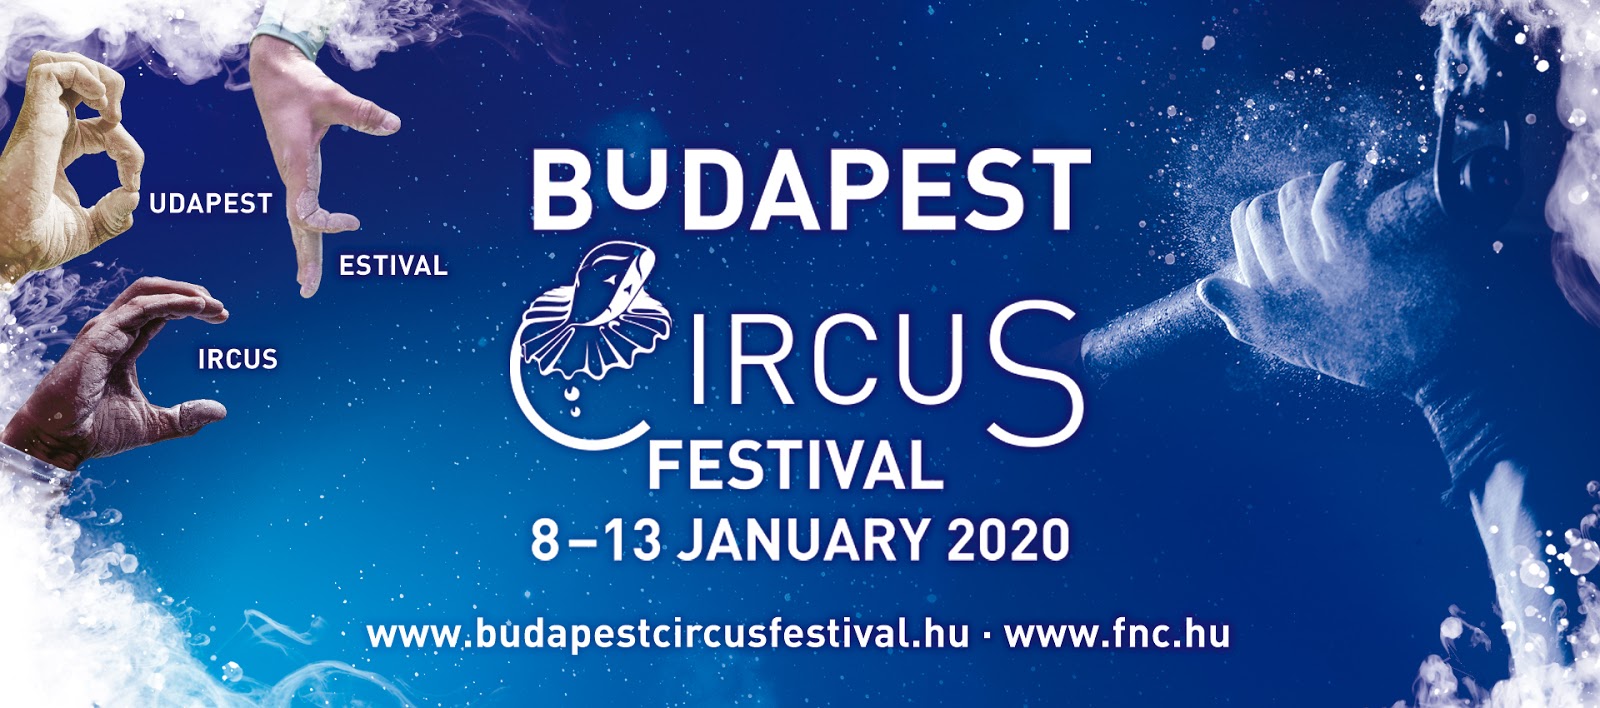 13e Budapest Circus Festival